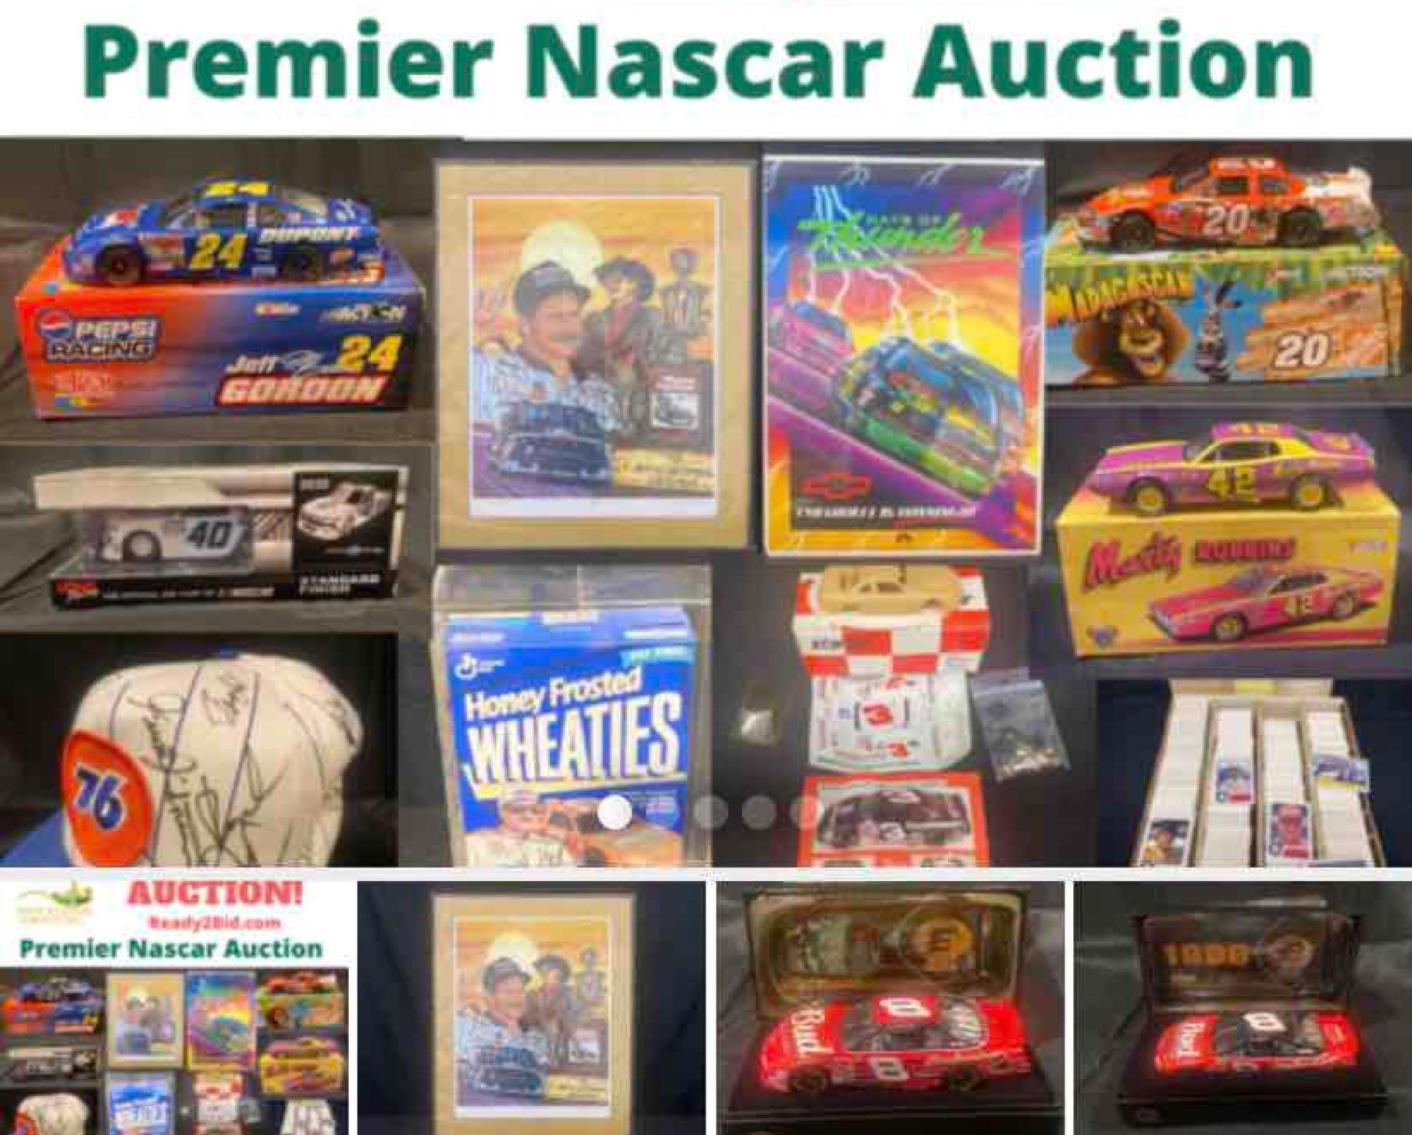 Premier Nascar Auction